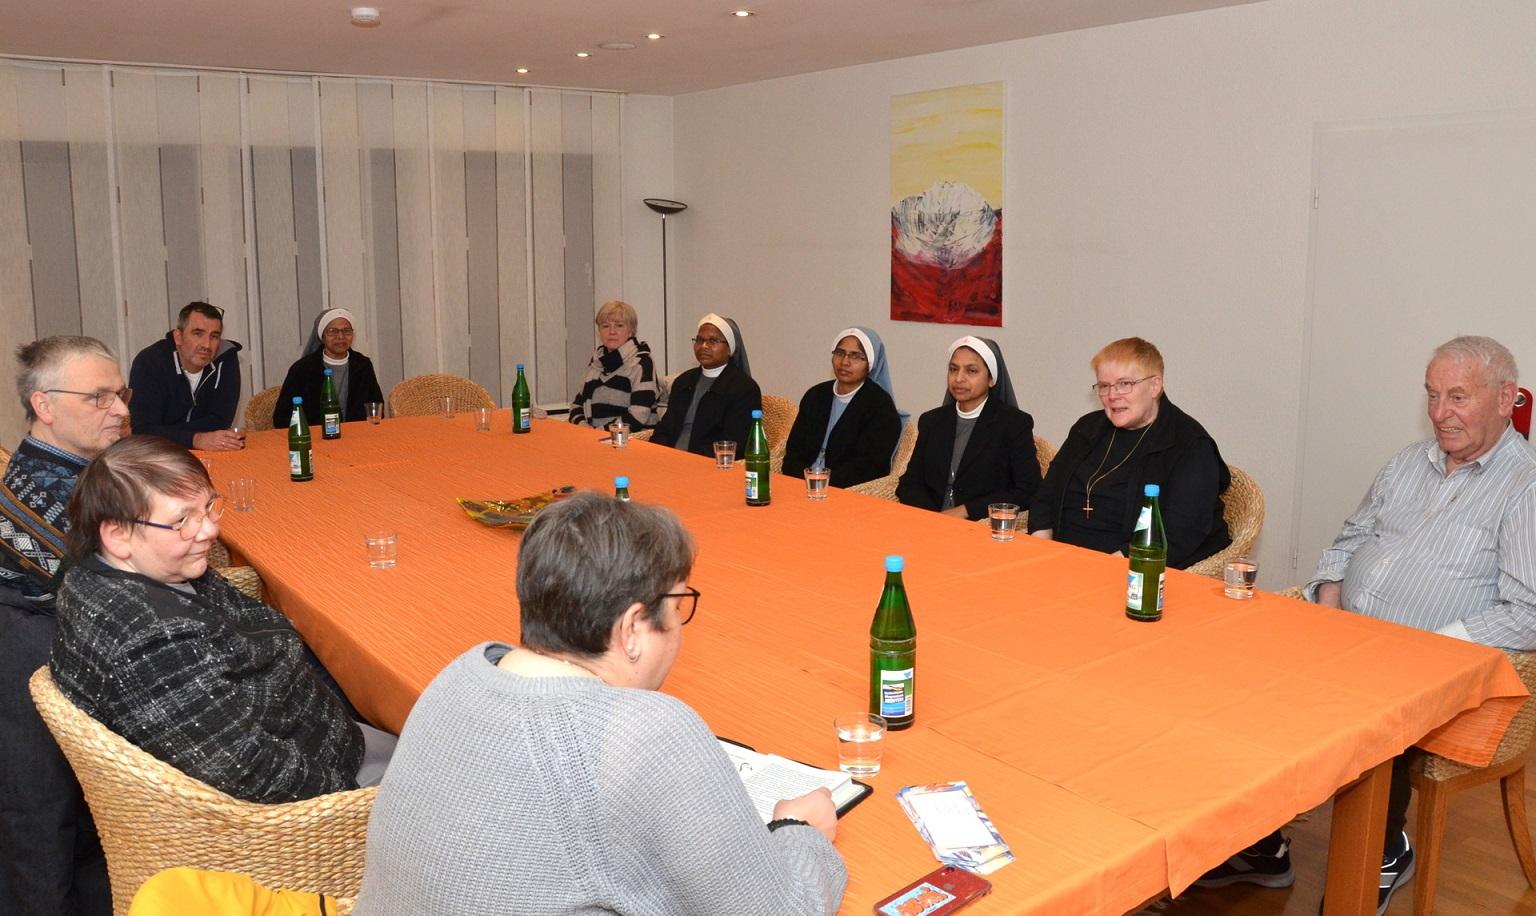 Einen besonderen Impulsabend rund um das Thema Fasten bescherte die evangelische Diakonin Jutta Lindenfels ihrem Auditorium im Mutterhaus des Mechernicher Ordo Communionis in Christo.